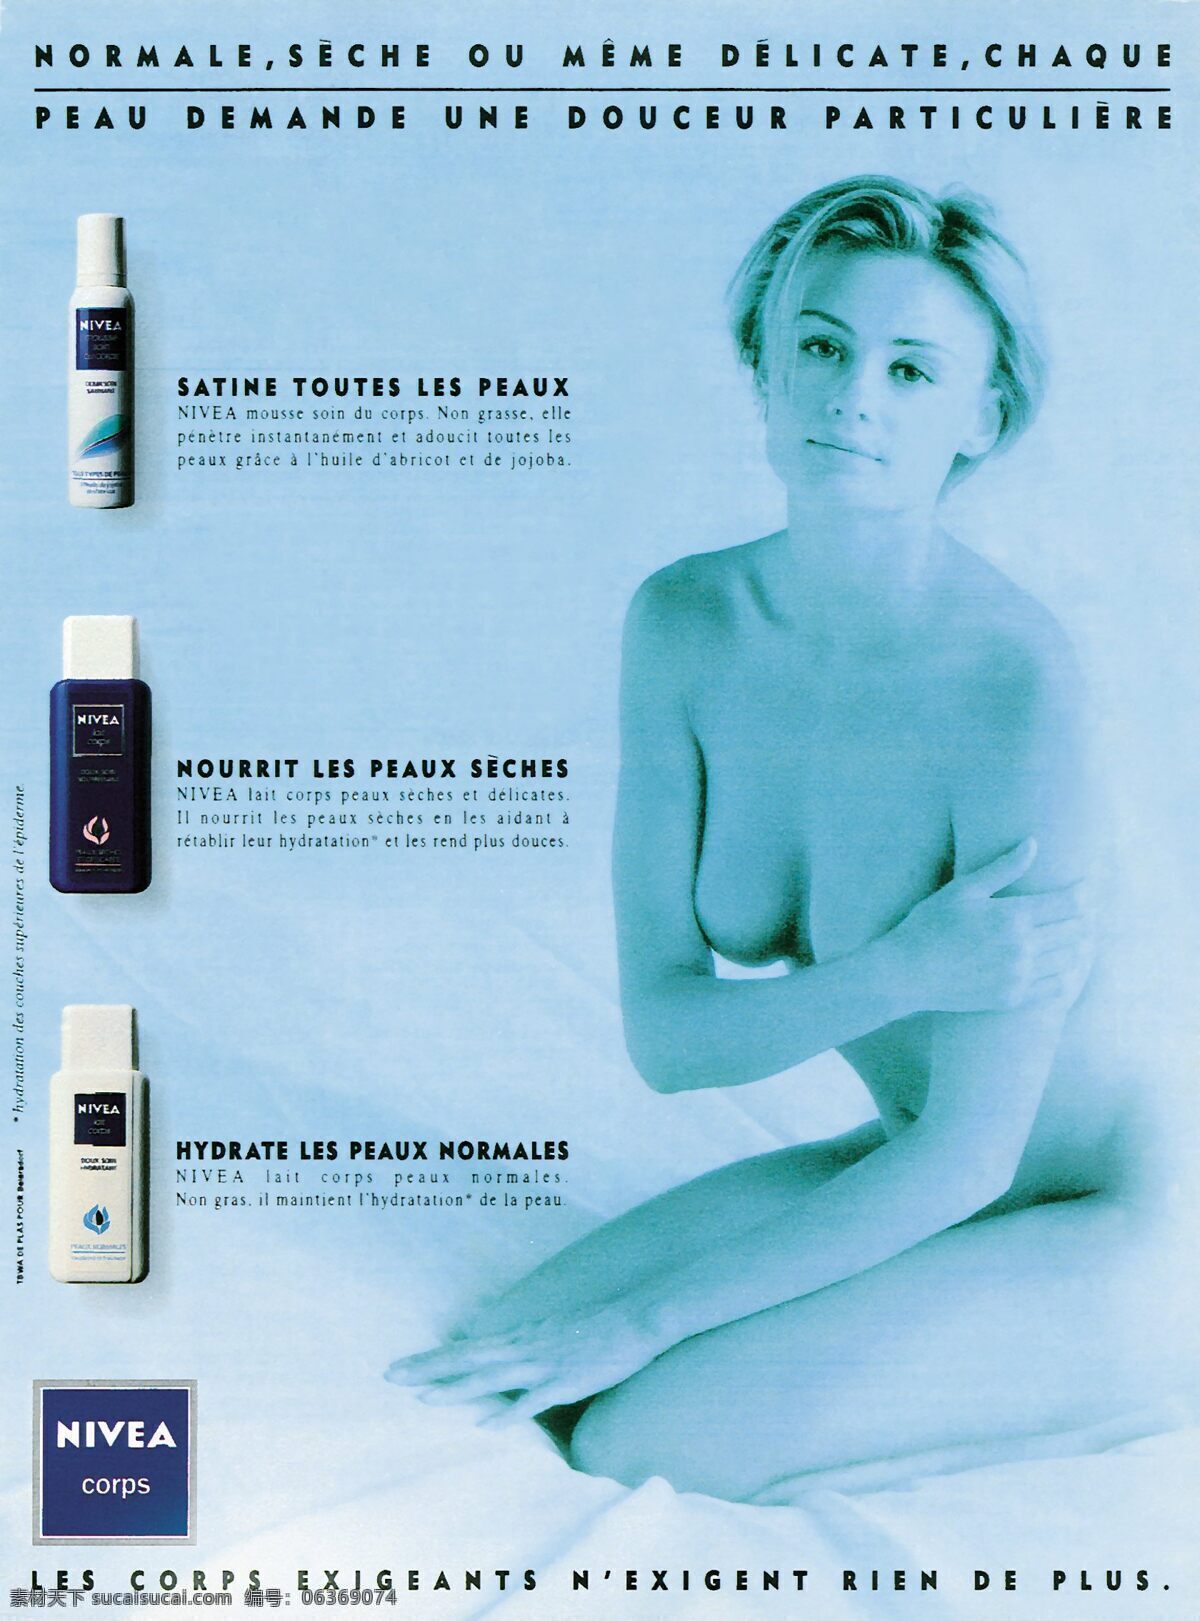 法国 香水 化妆品 广告 创意设计 设计素材 美容化妆 平面创意 平面设计 青色 天蓝色